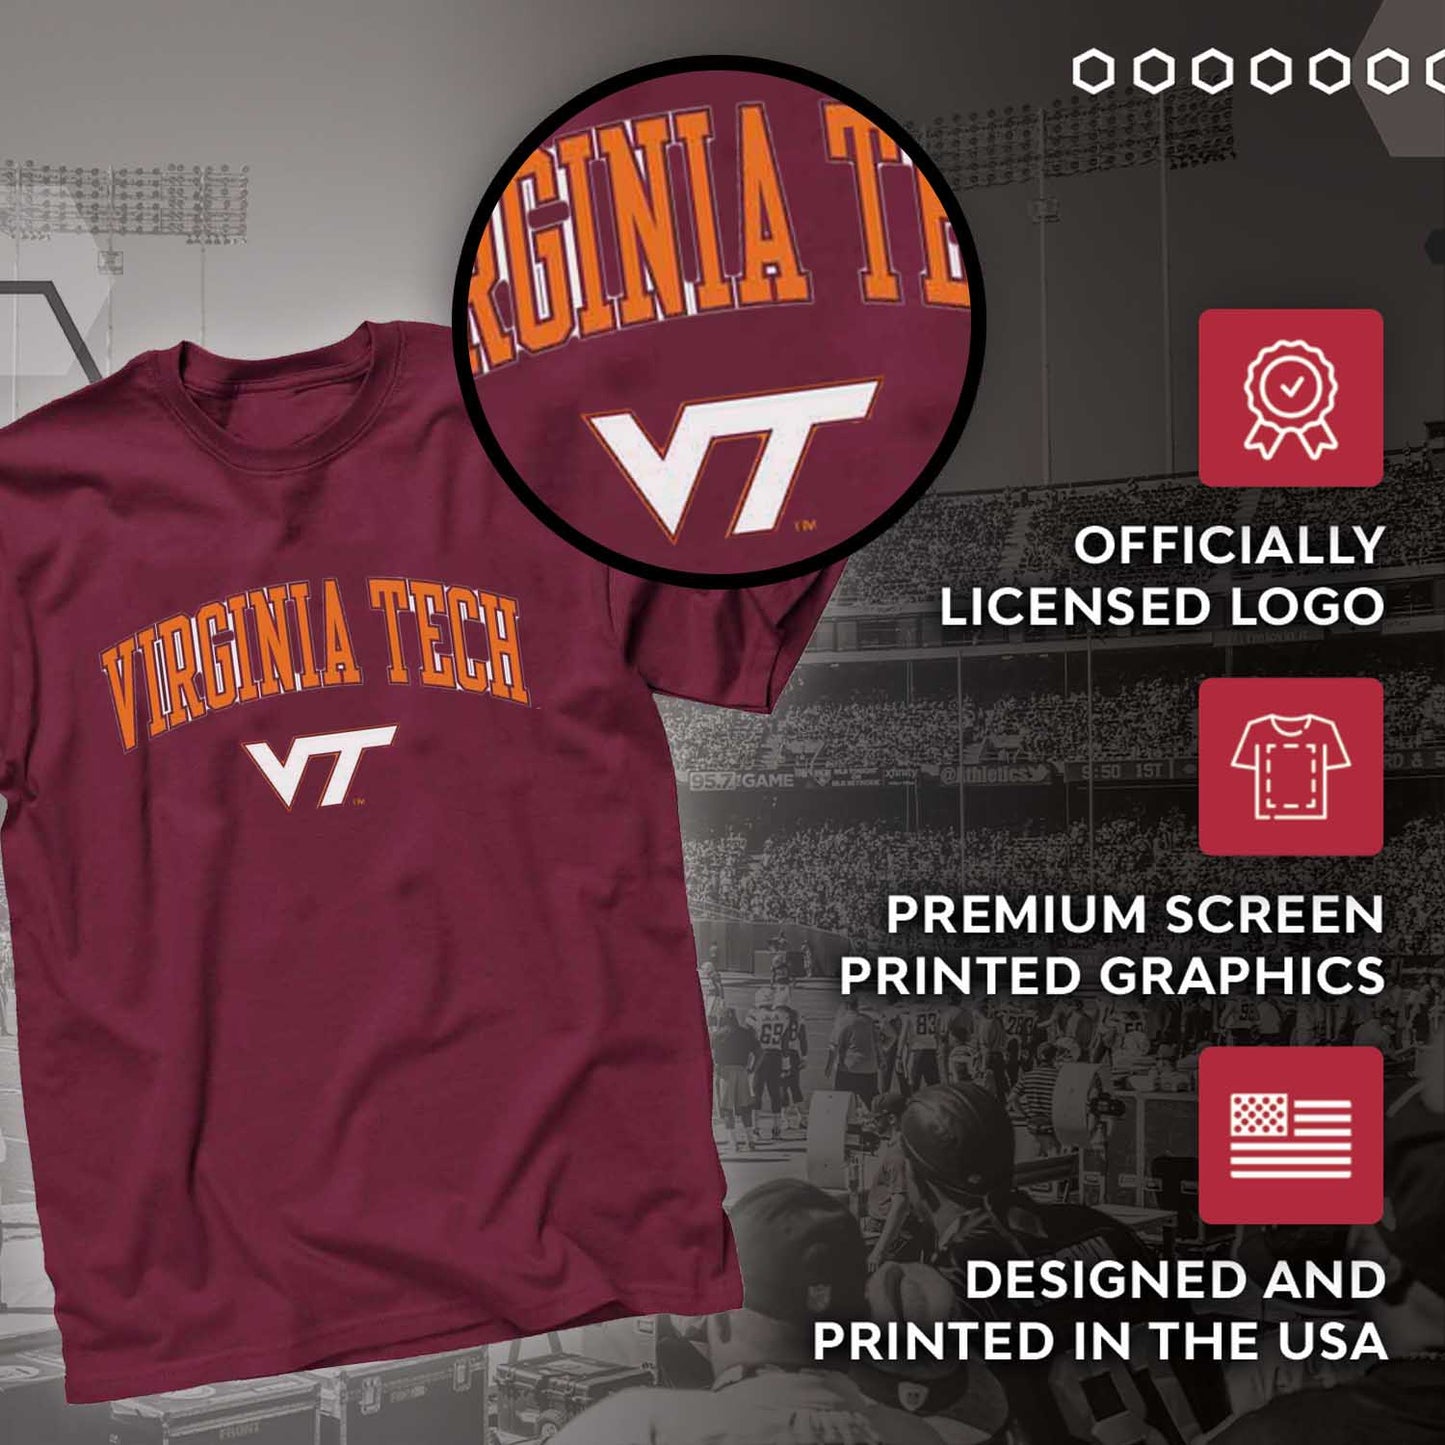 Virginia Tech Hokies NCAA Adult Gameday Cotton T-Shirt - Maroon